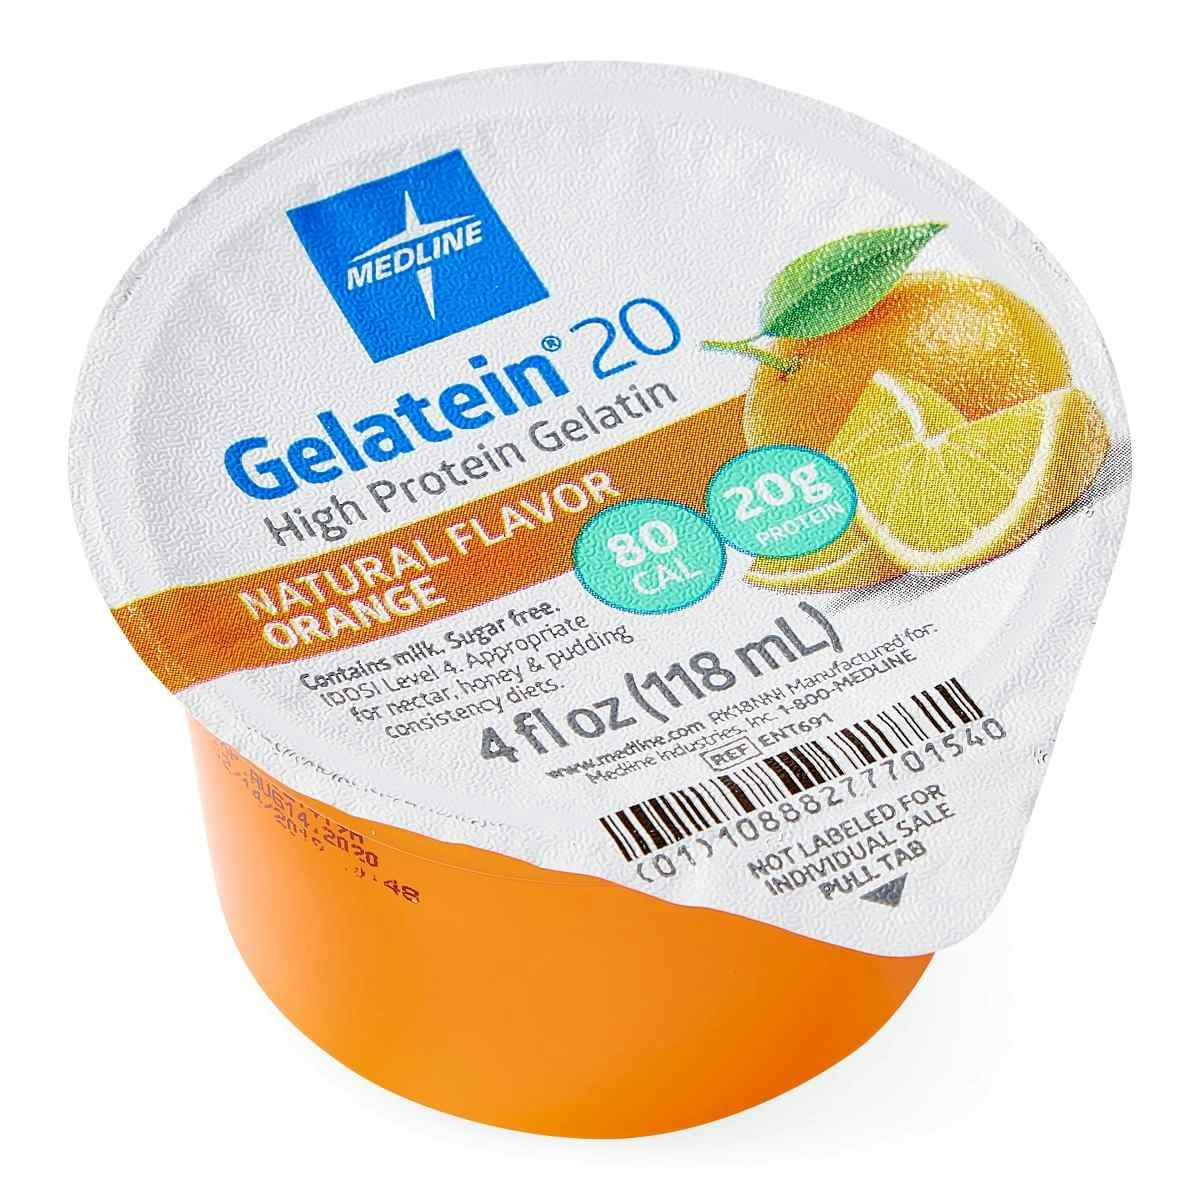 Medline Gelatein 20 High Protein Supplement, Orange Flavor, 4-oz., ENT691, Case of 36